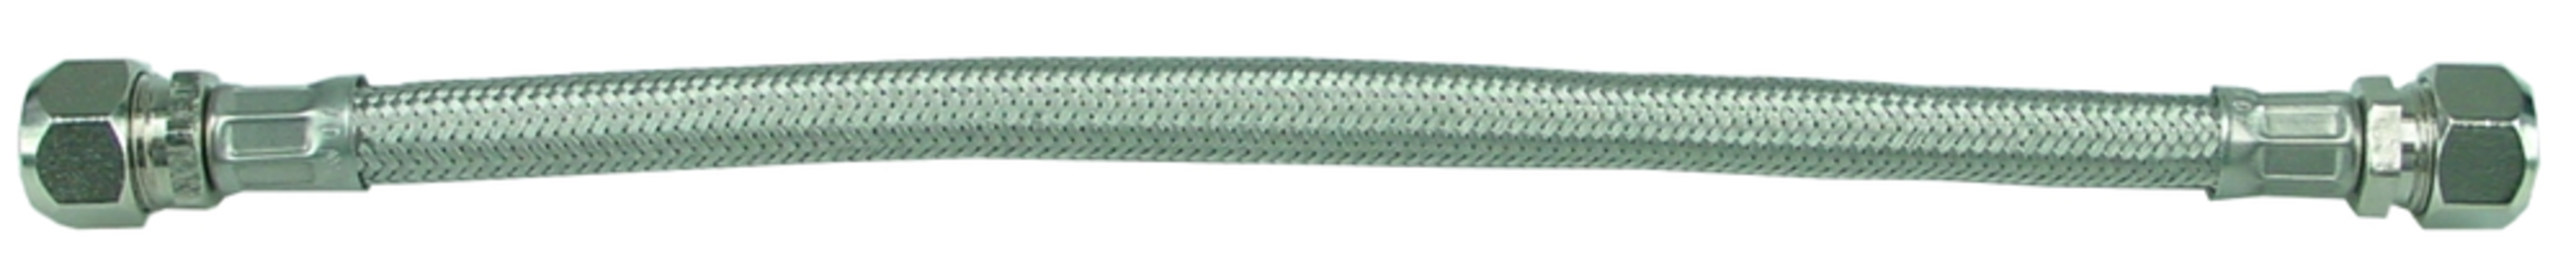 Sub KIWA metalen flex.aansluitslang 12x12 30 cm